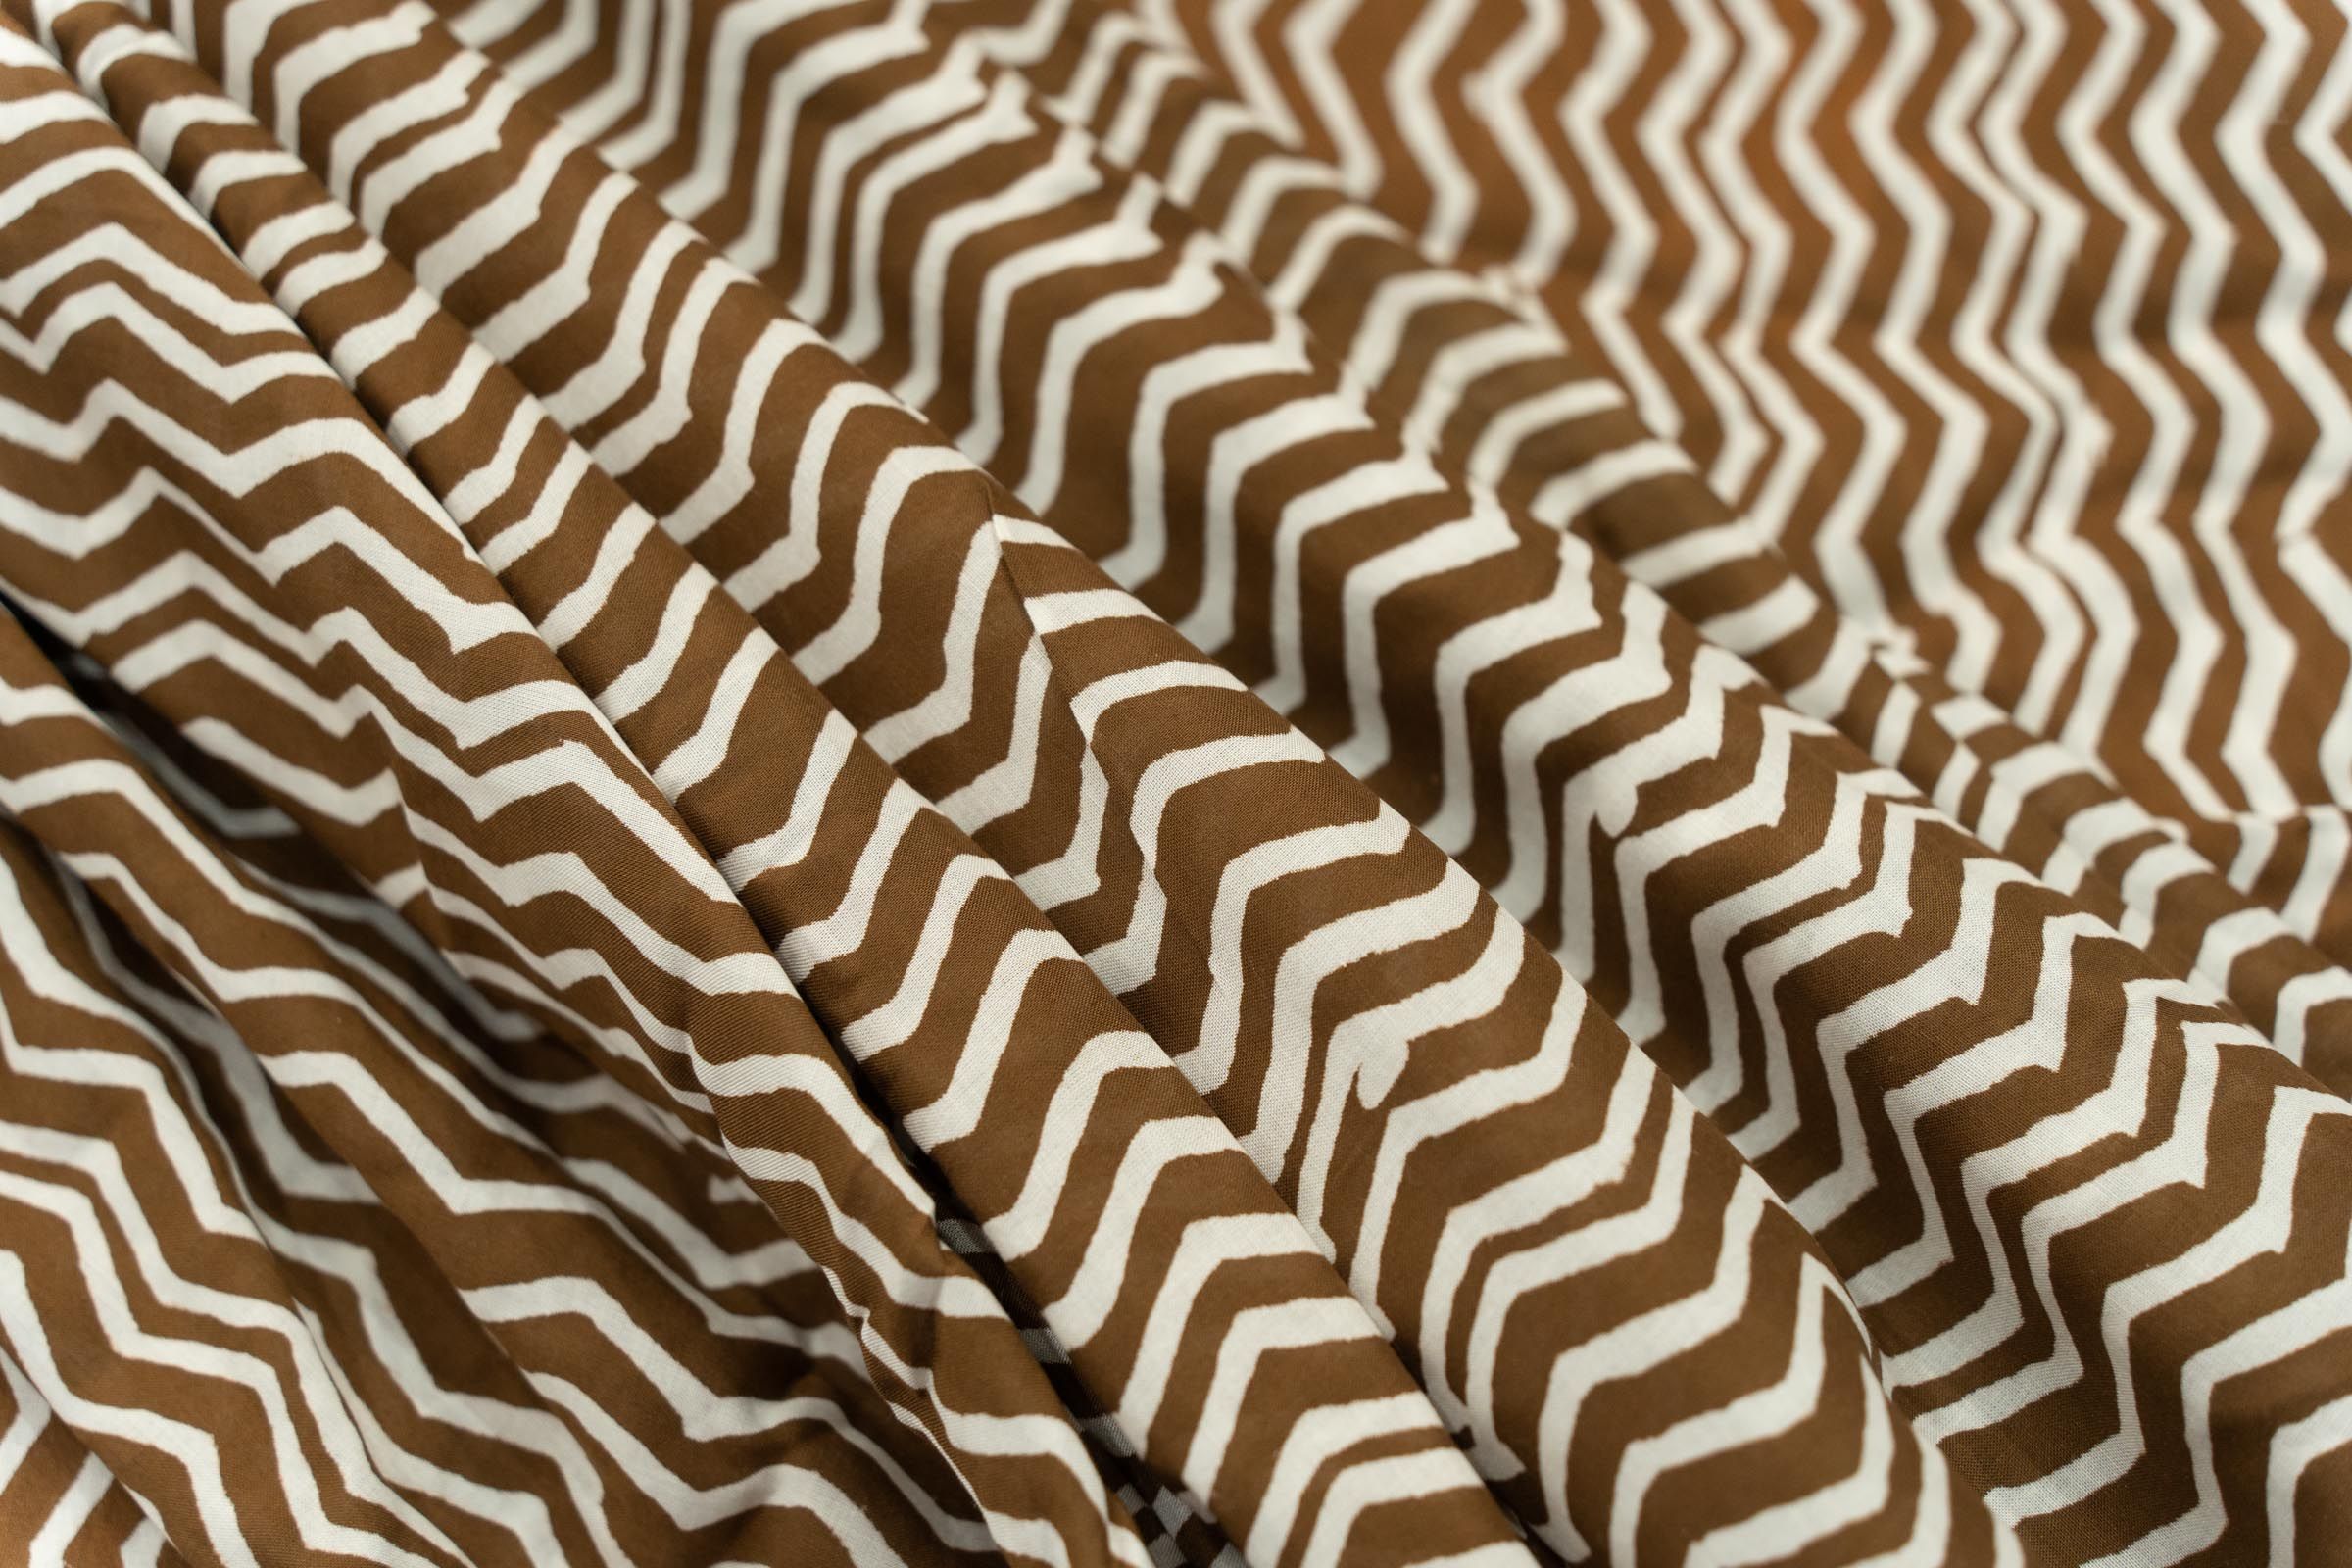 Chevron Hand Block Printed Fabric